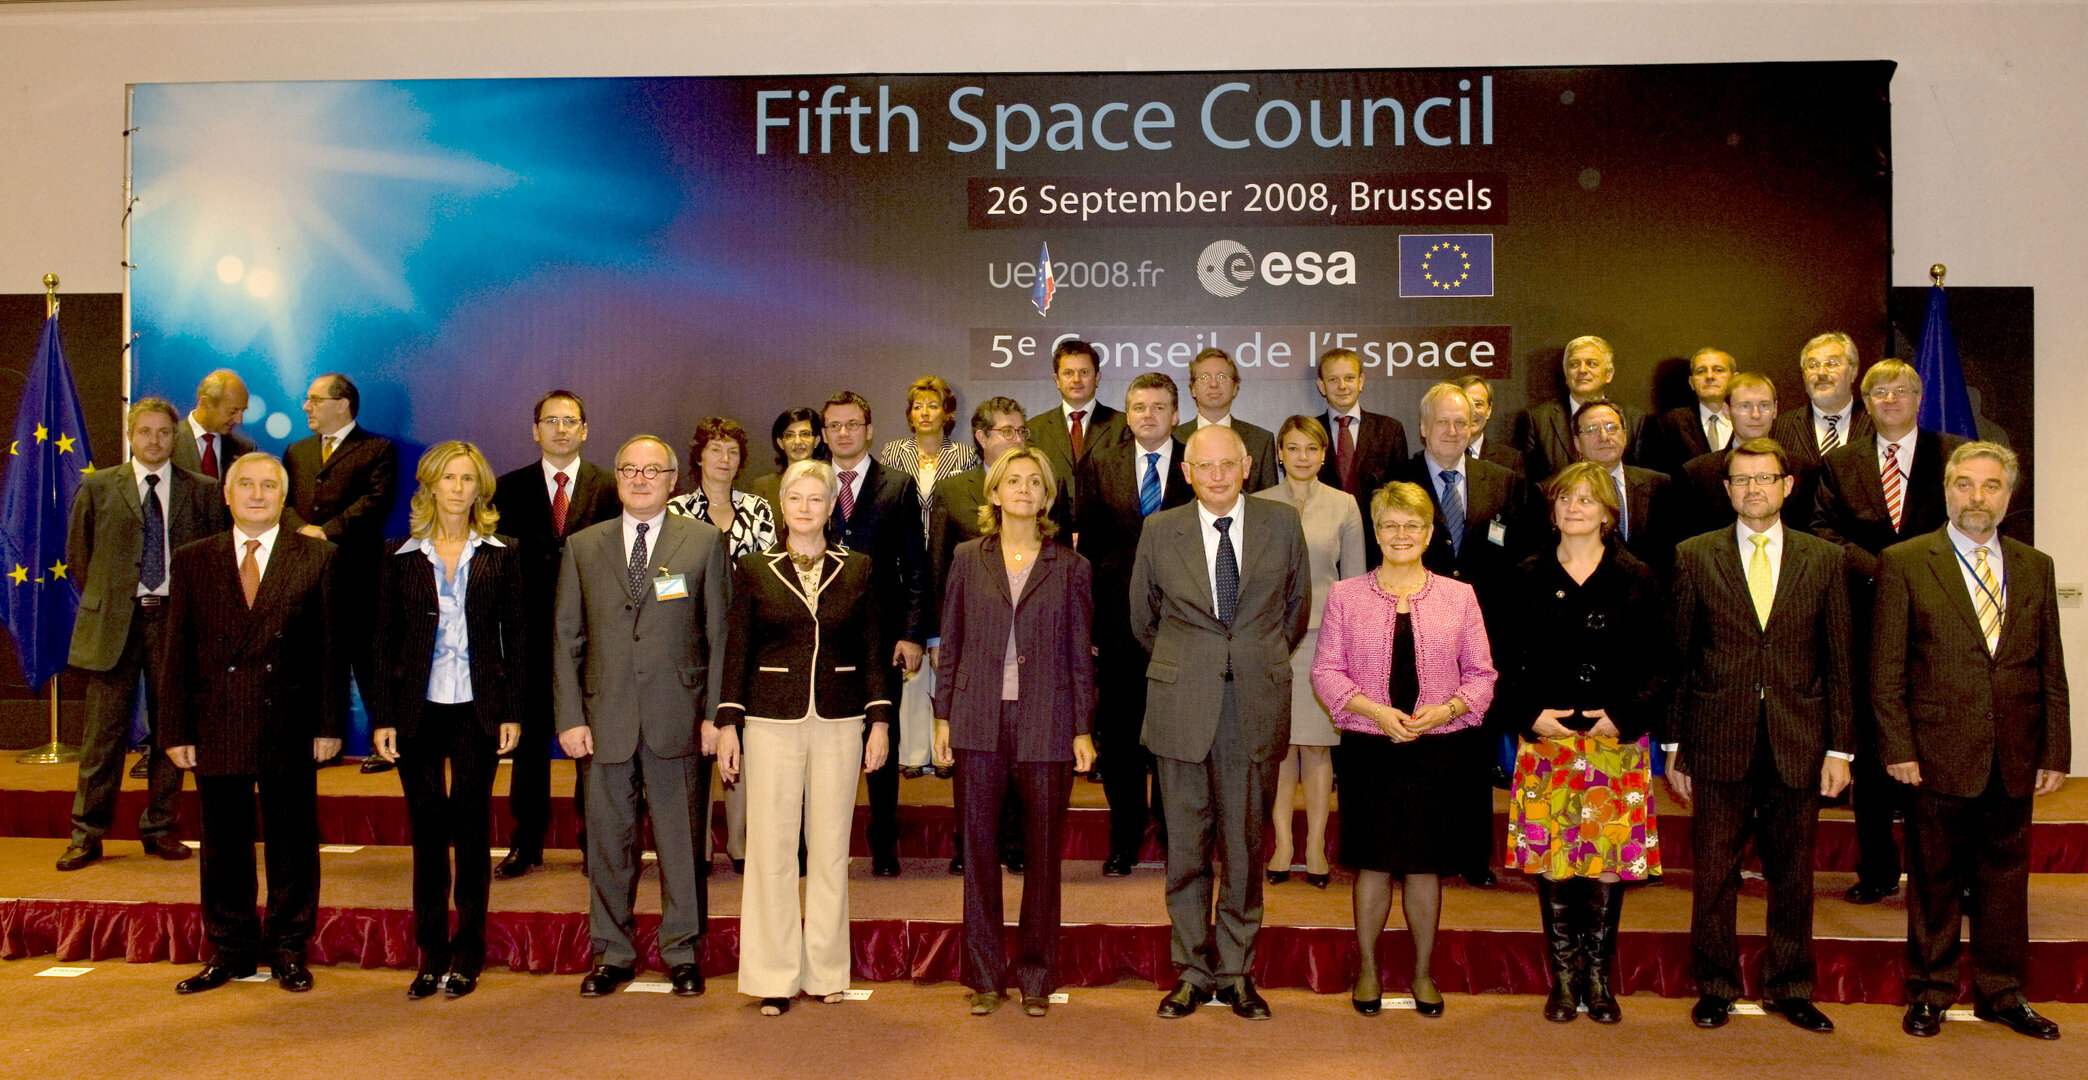 Die Minister treffen sich zum 5. Space Council in Brüssel